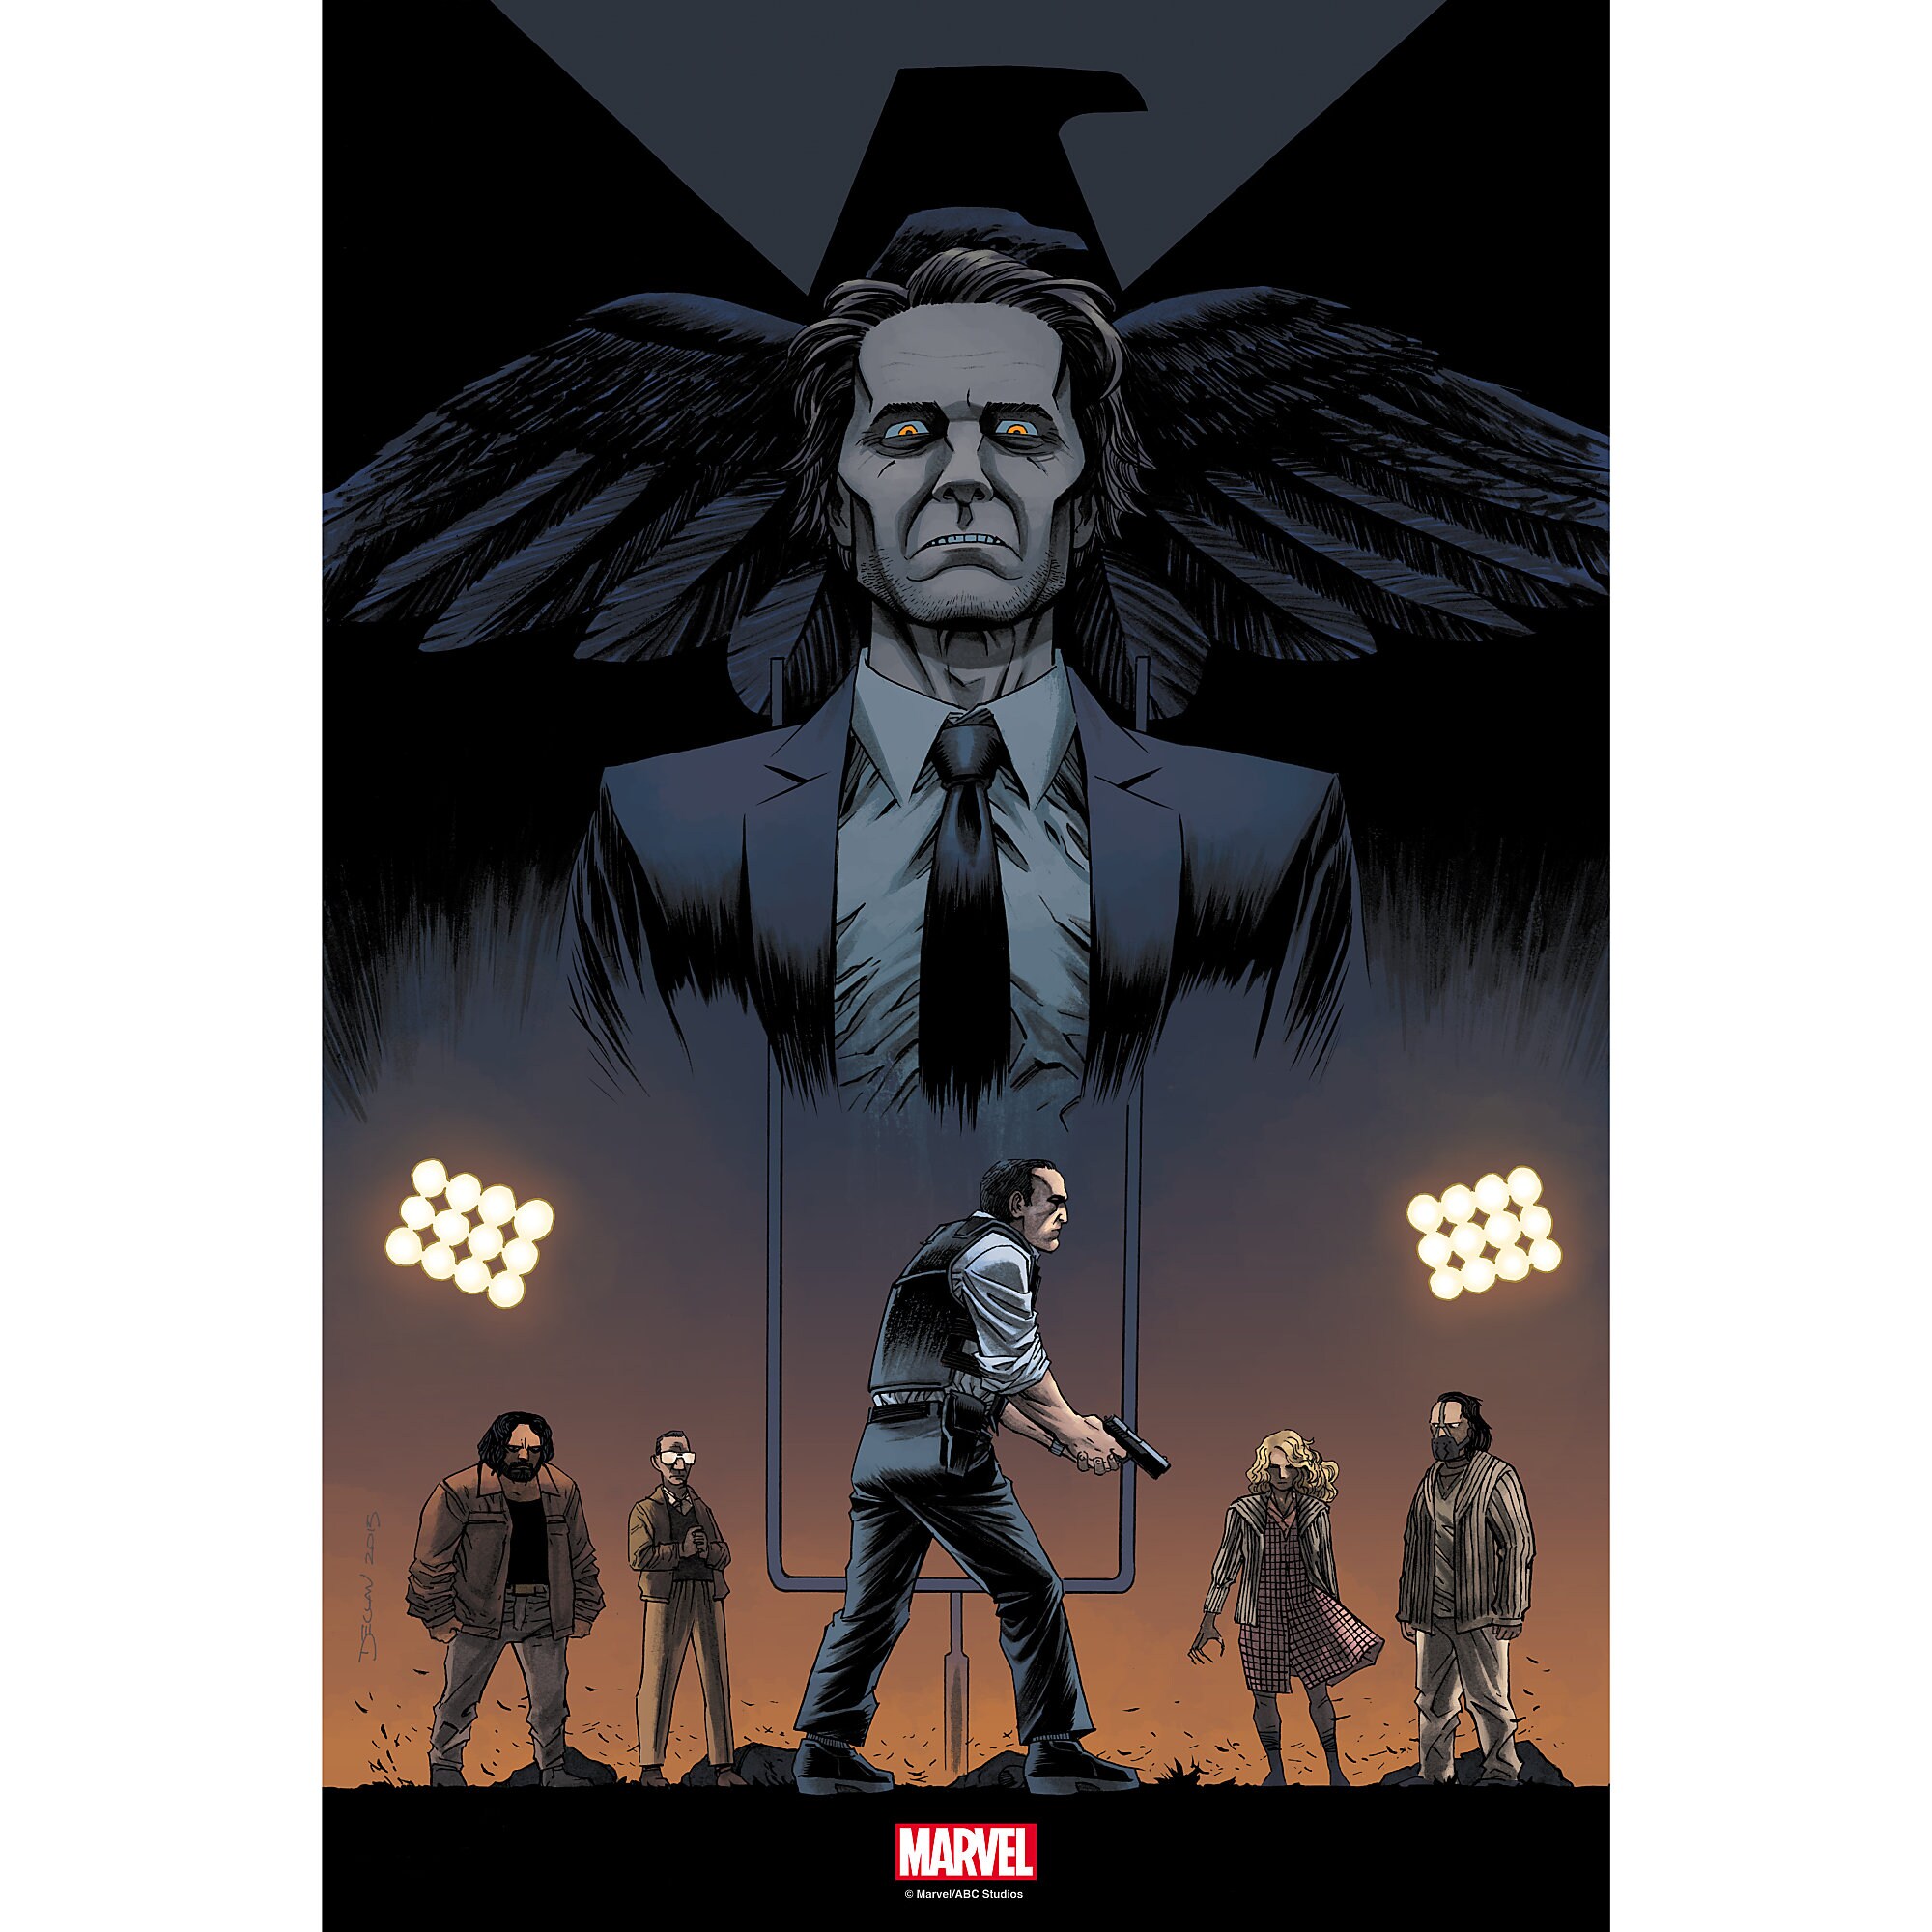 Marvel's Agents of S.H.I.E.L.D. ''One of Us'' Print - Limited Edition